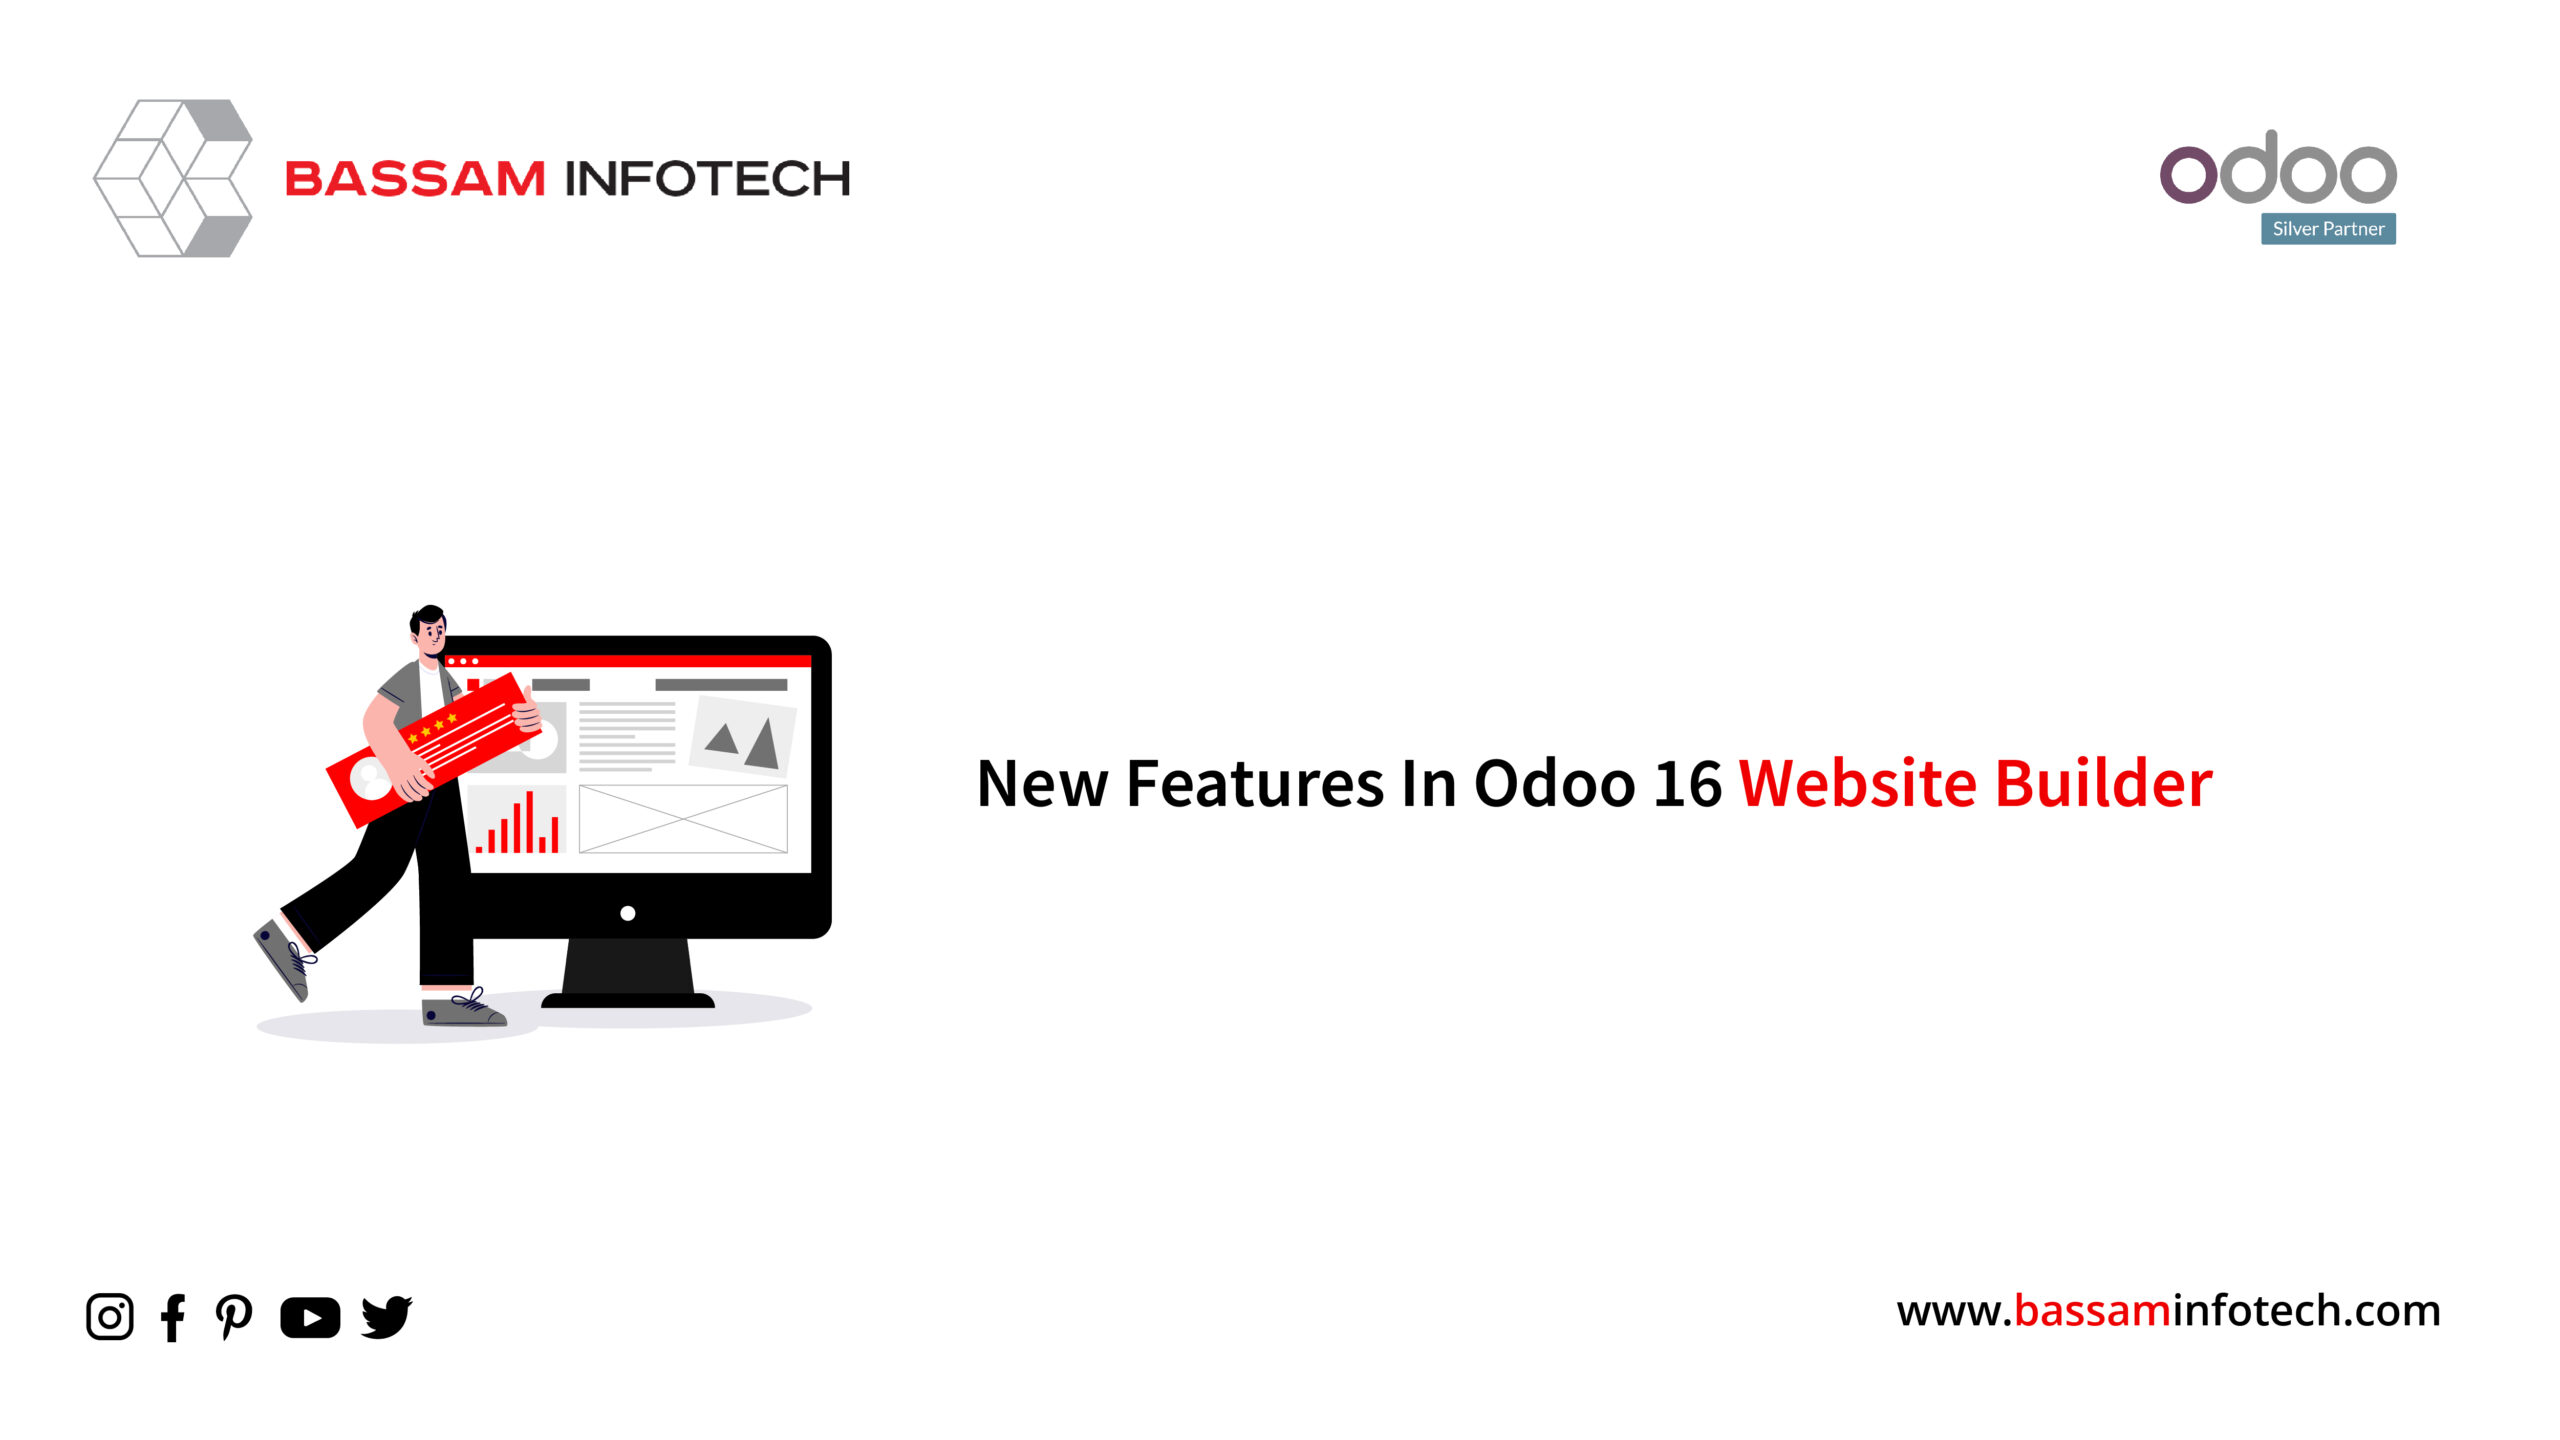 New Features in Odoo 16 Website Builder